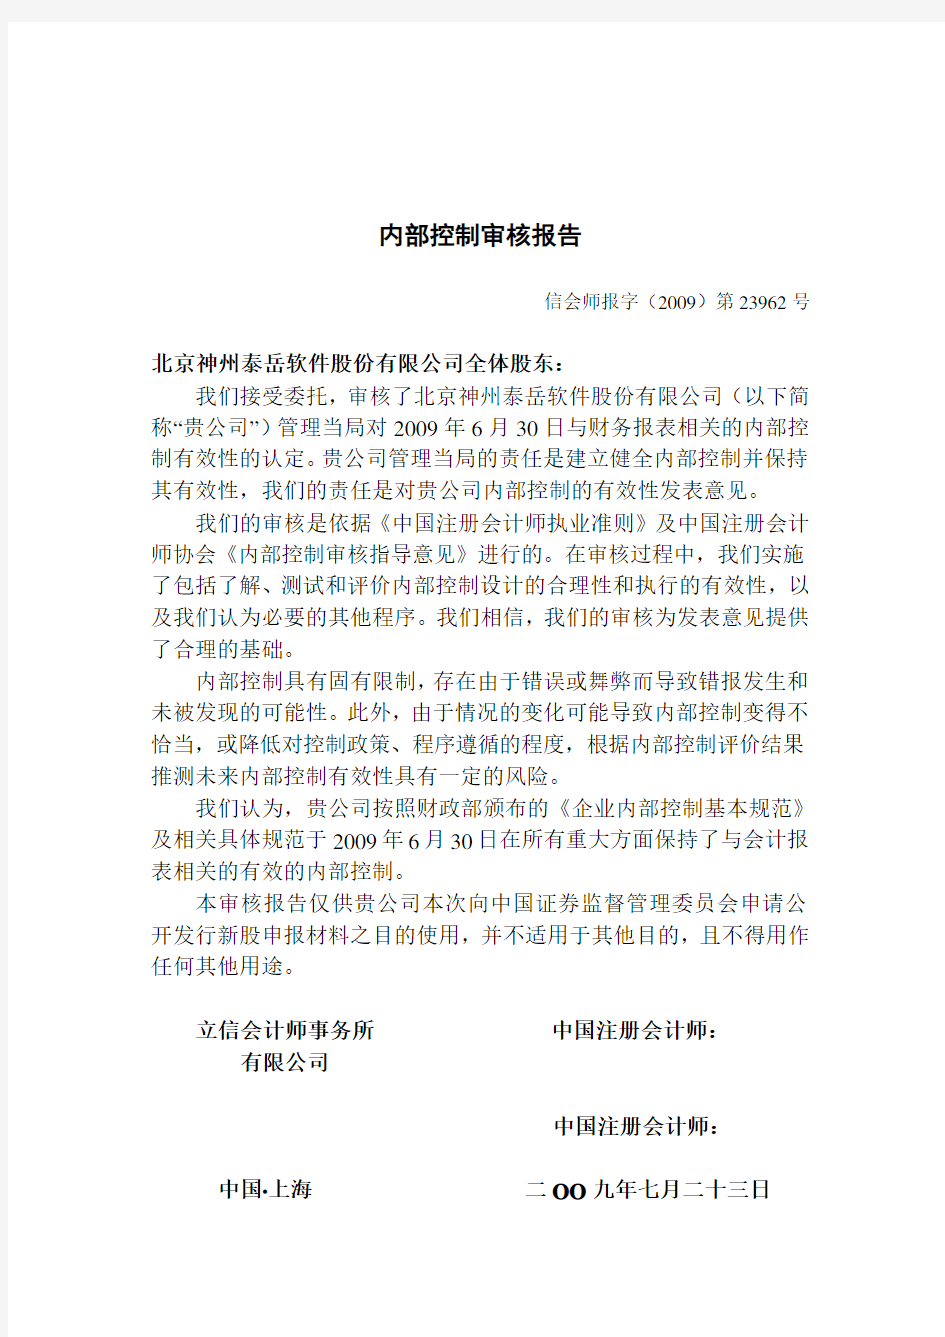 北京神州泰岳软件股份有限公司 内部控制审核报告 200906